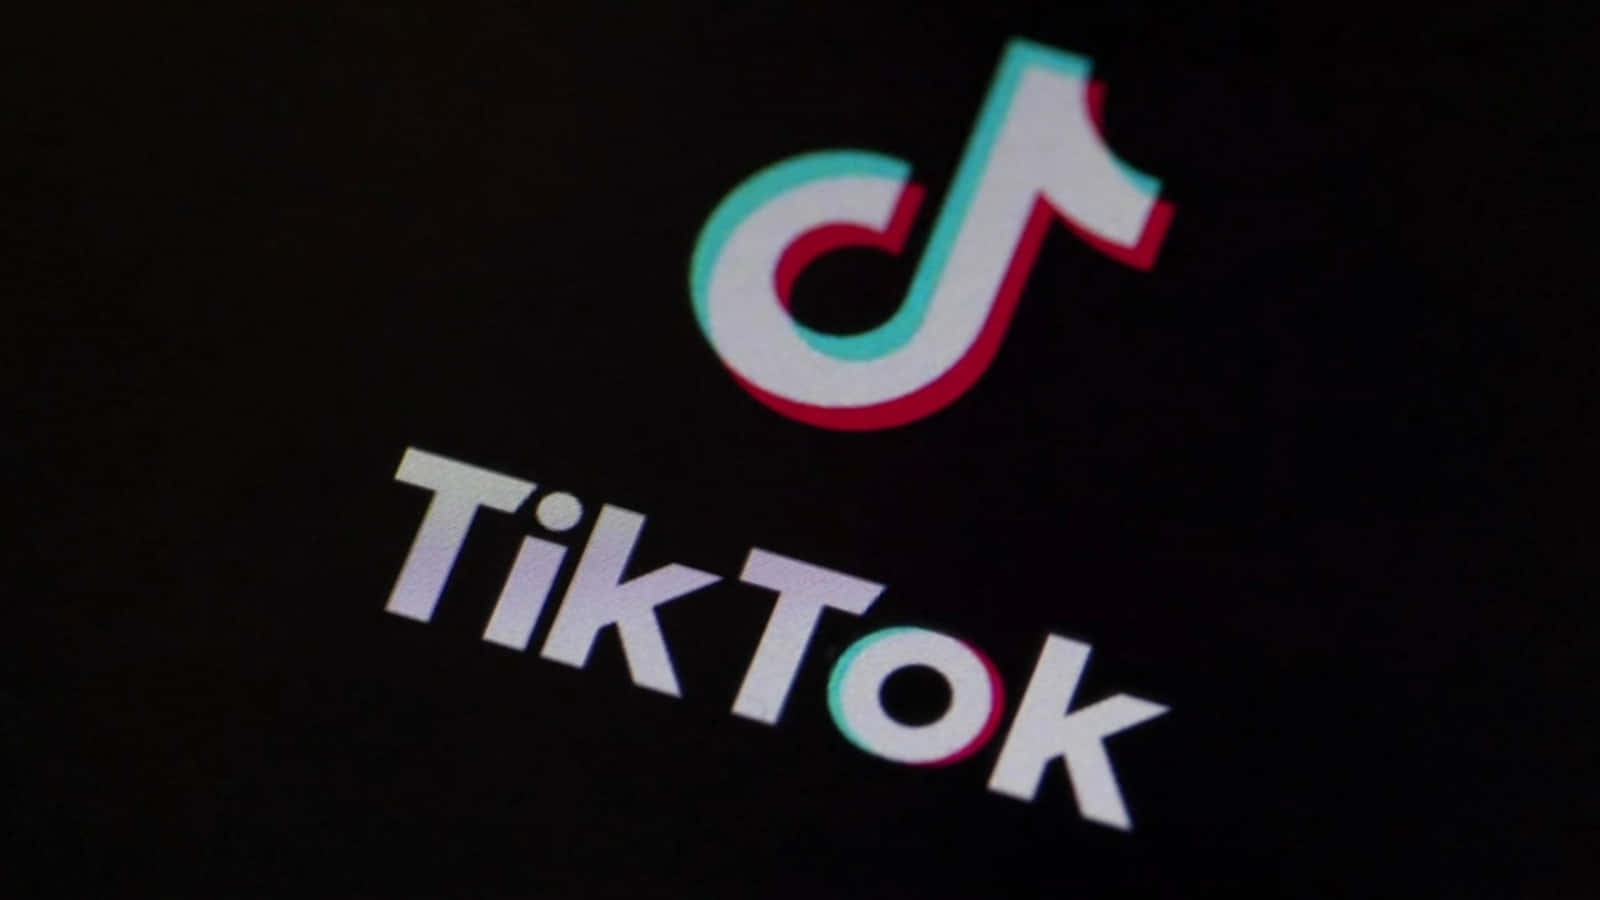 Dastiktok-logo Ist Auf Einem Schwarzen Bildschirm Zu Sehen. Wallpaper